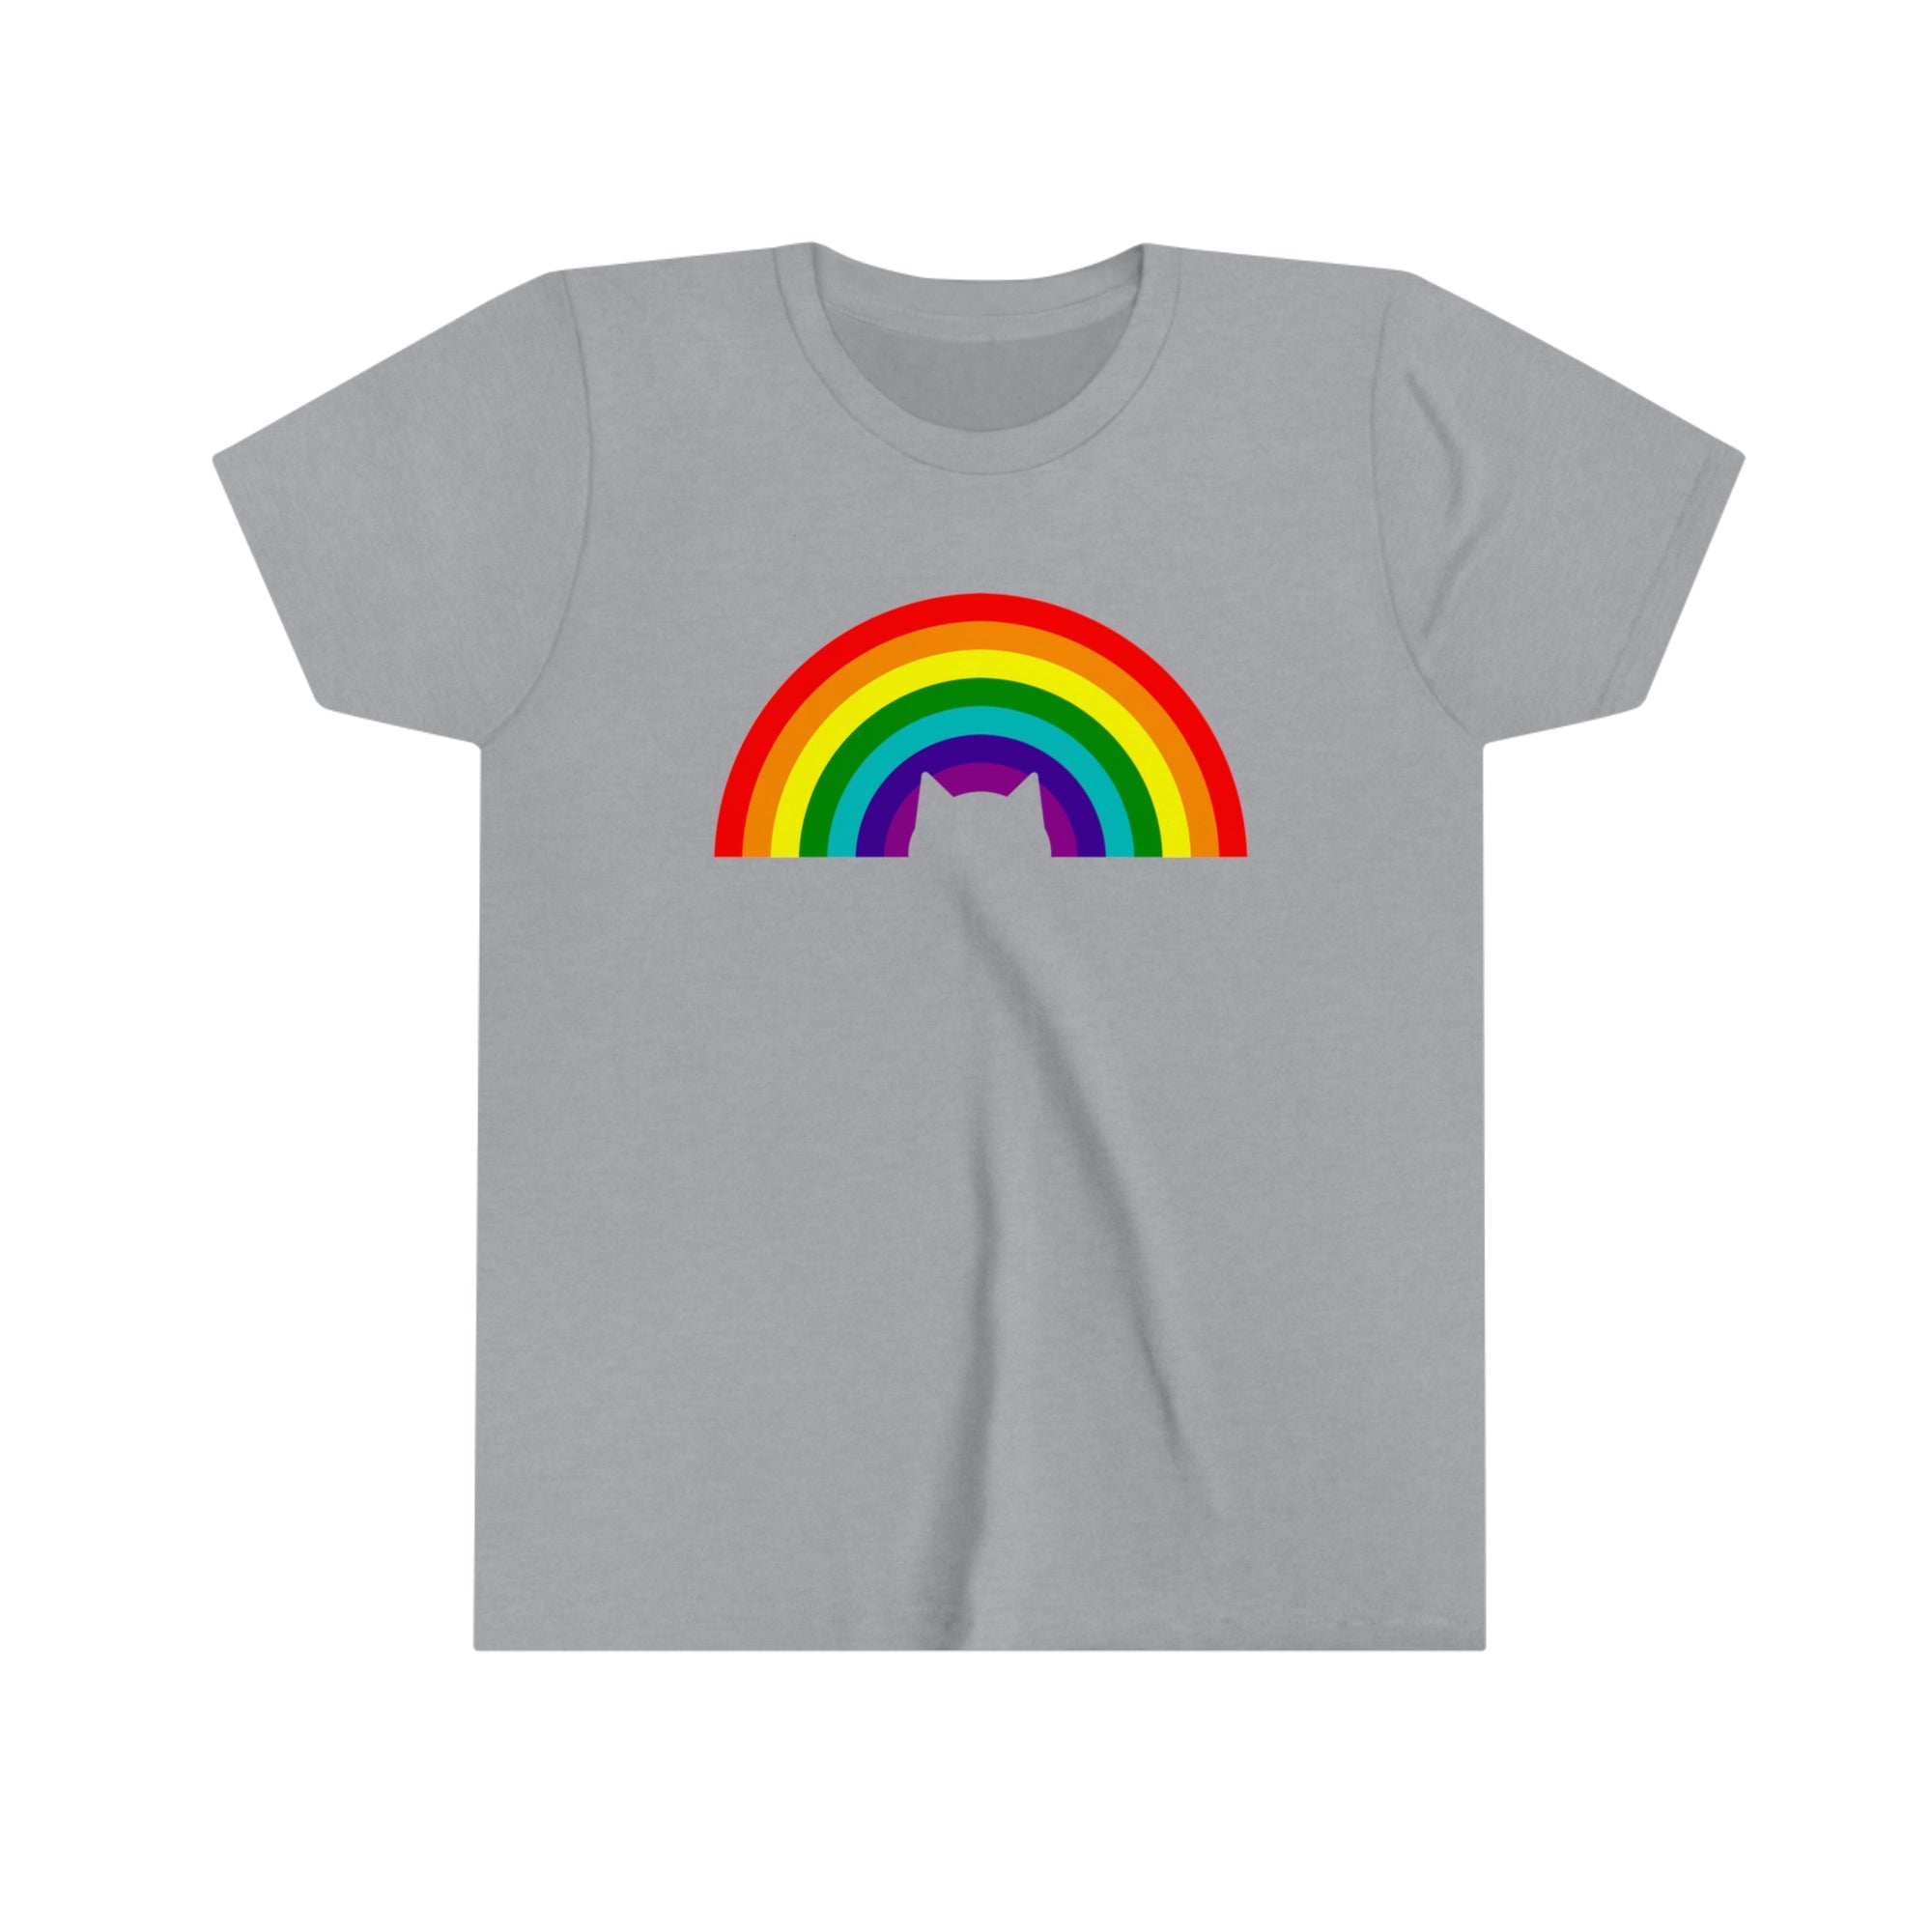 Rainbow Cat - Youth T-Shirt